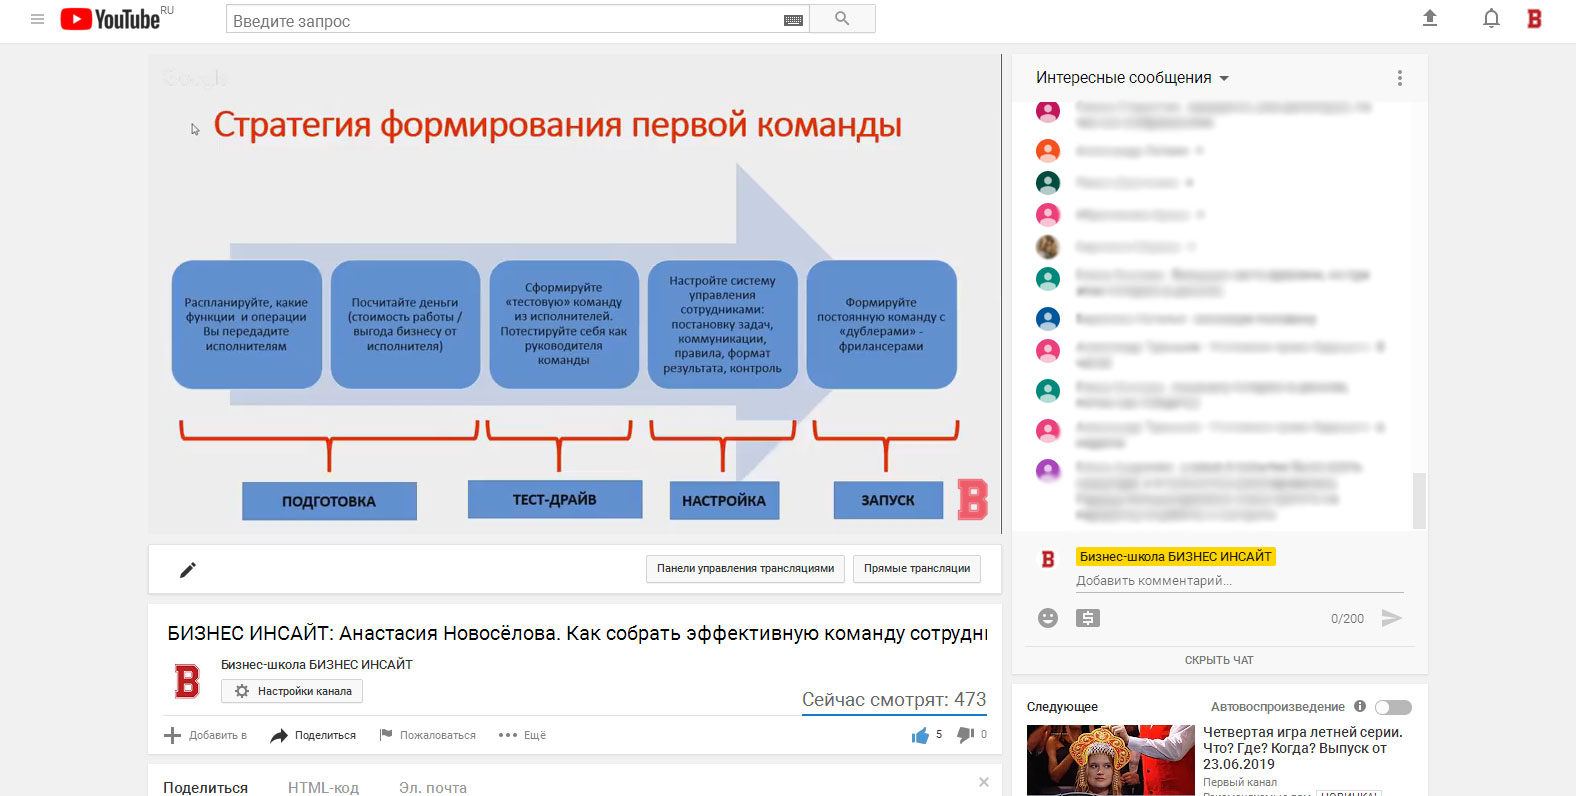 Анастасия Новосёлова провела открытый (бесплатный) вебинар в бизнес-школе БИЗНЕС ИНСАЙТ